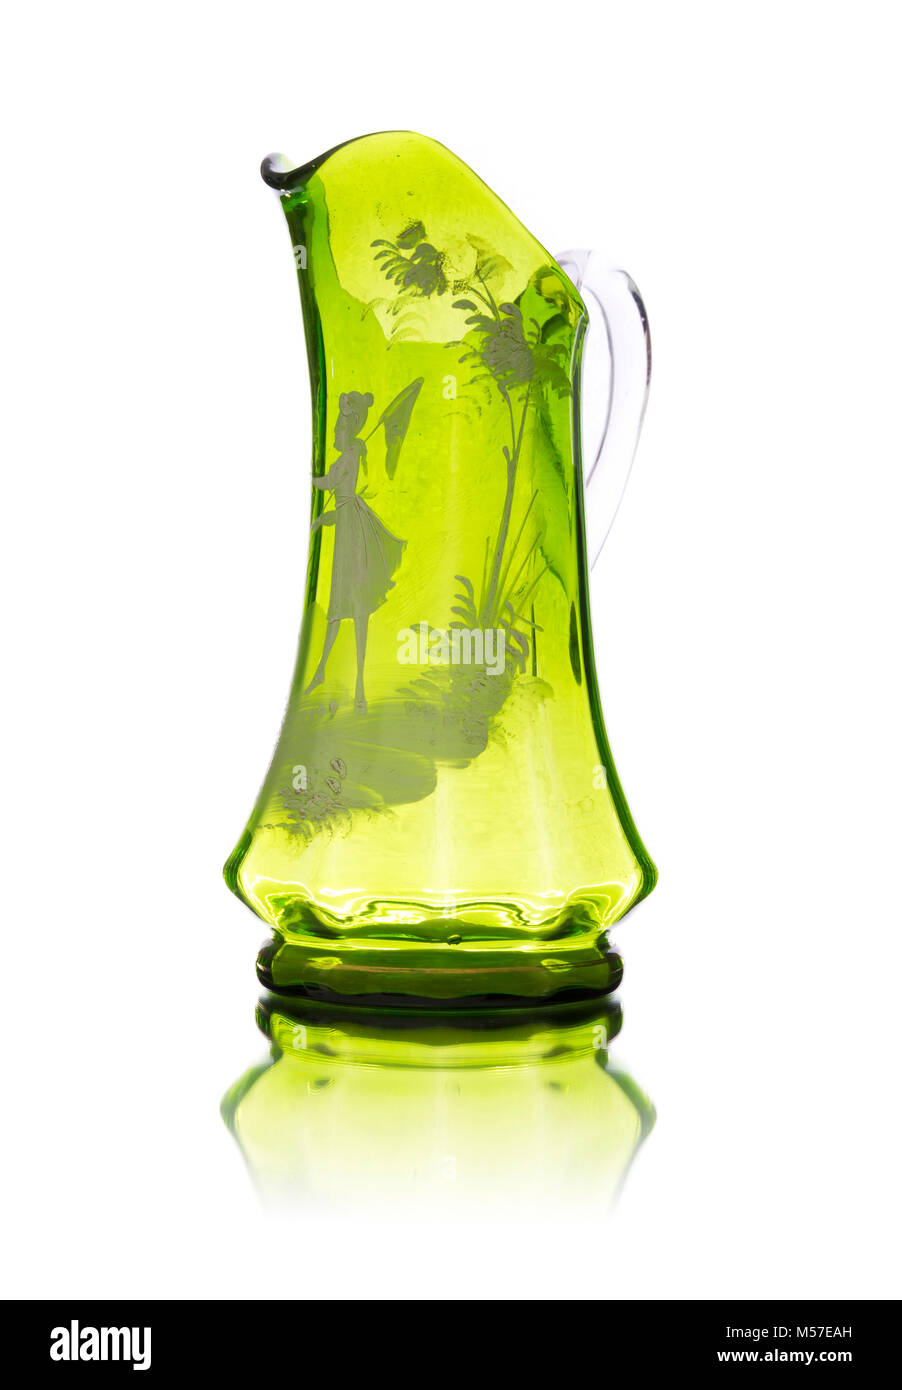 Antique glass vase isolated on white background Stock Photo